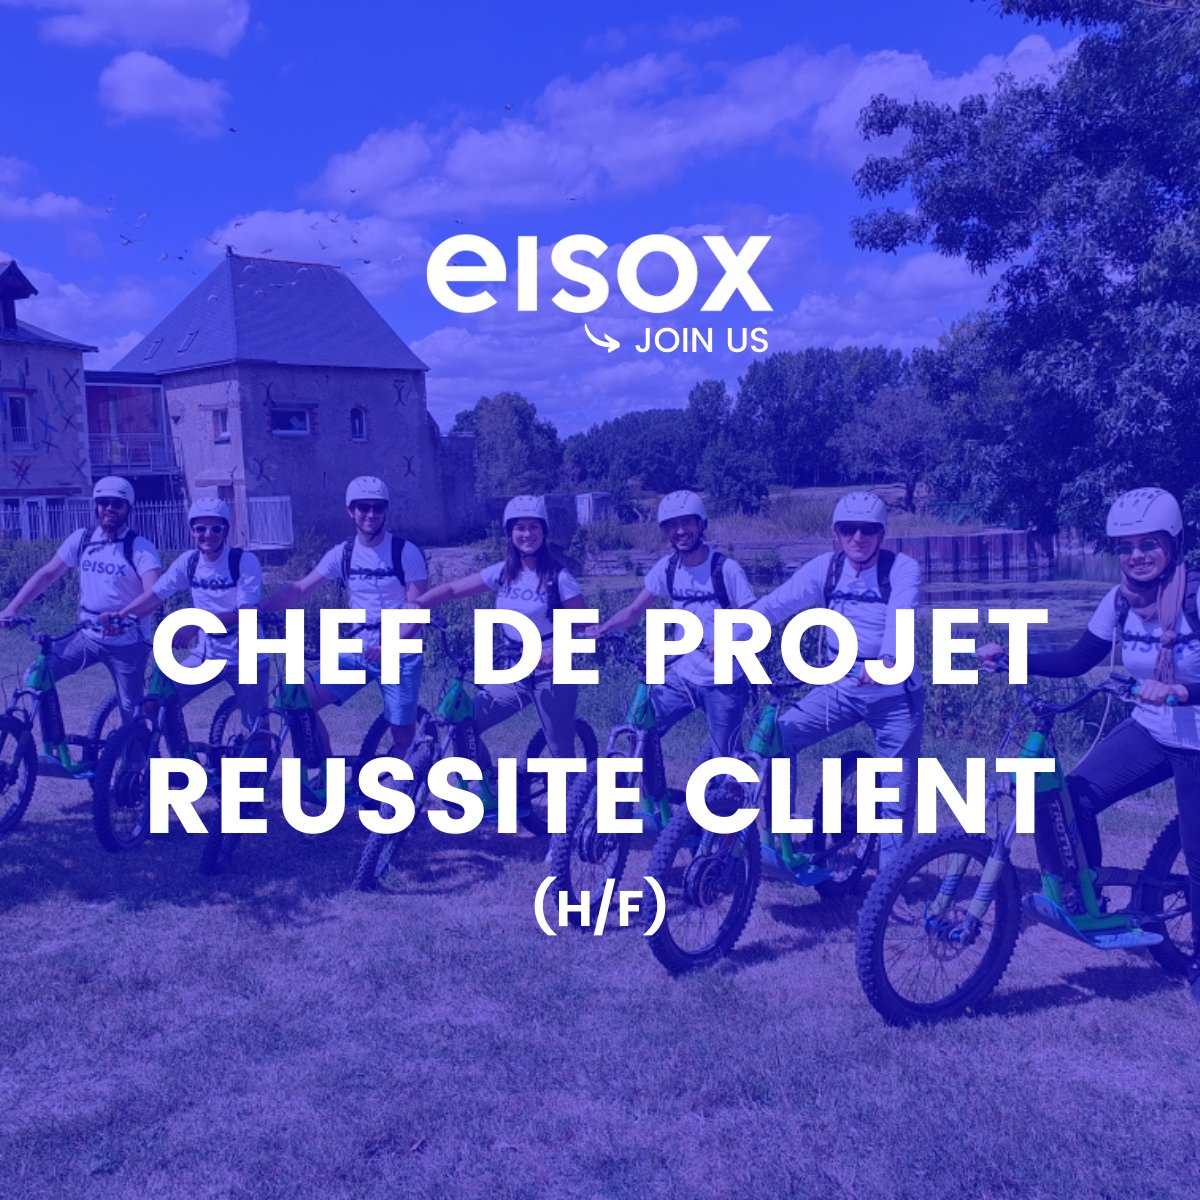 #EisoxRecrute 🚨|Plus que quelques jours pour postuler⏱ #Eisox recherche un Chef de Projet Réussite Client (H/F) Vous êtes soucieux(se) de la satisfaction client, pédagogue et à l'aise dans les échanges techniques ? Fiche de poste😊👉bit.ly/4030loL #i4emploi